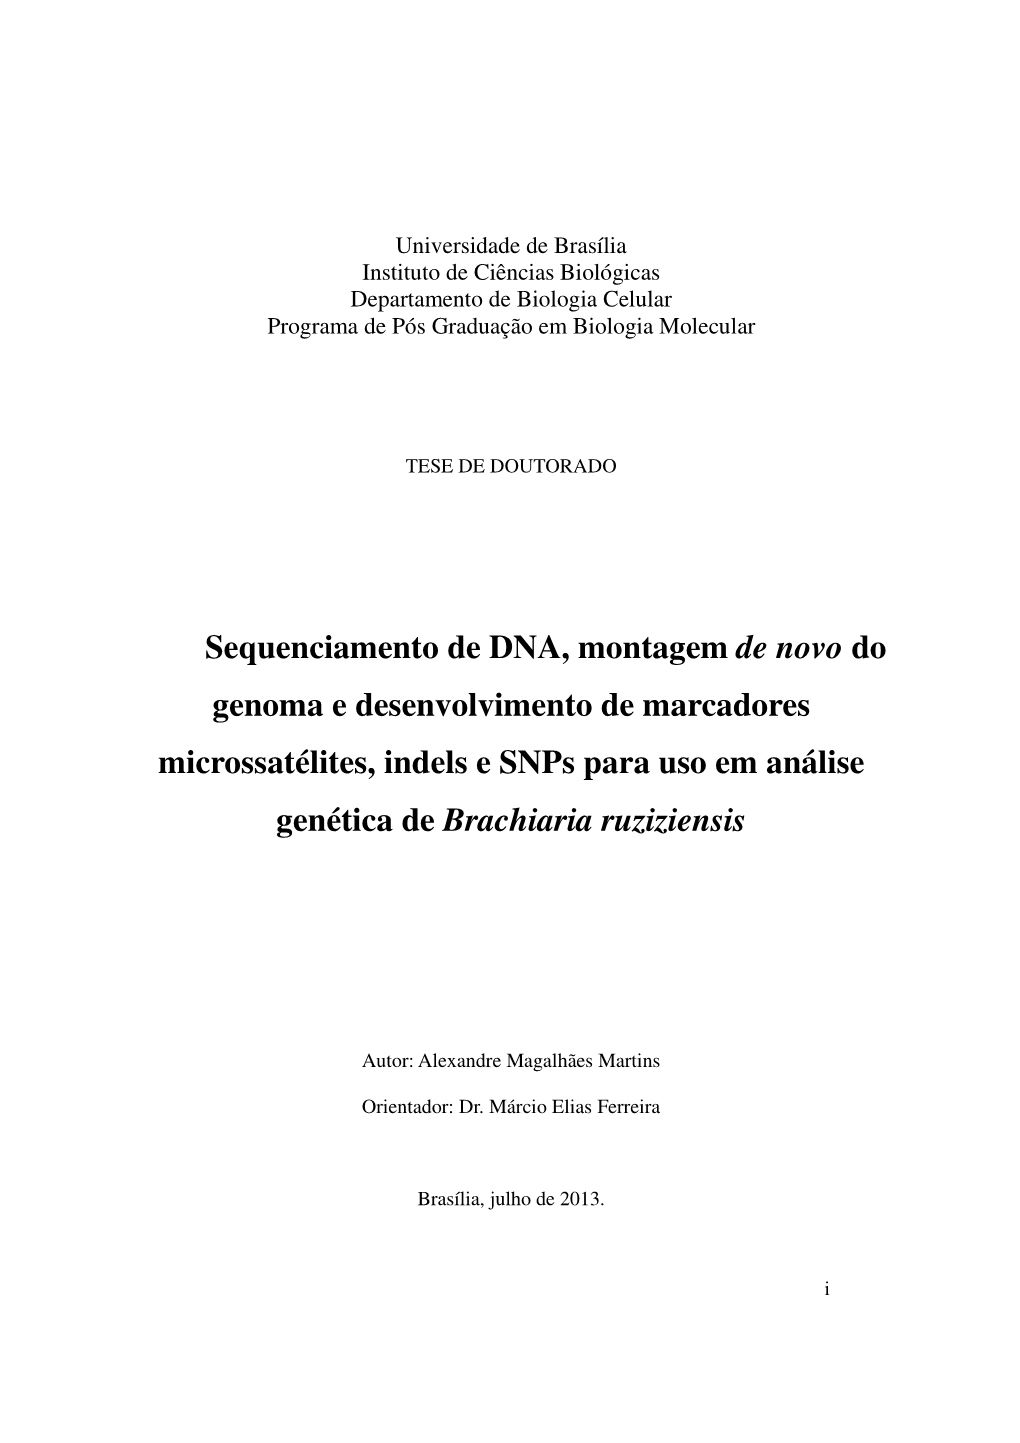 Sequenciamento De DNA, Montagem De Novo Do Genoma E